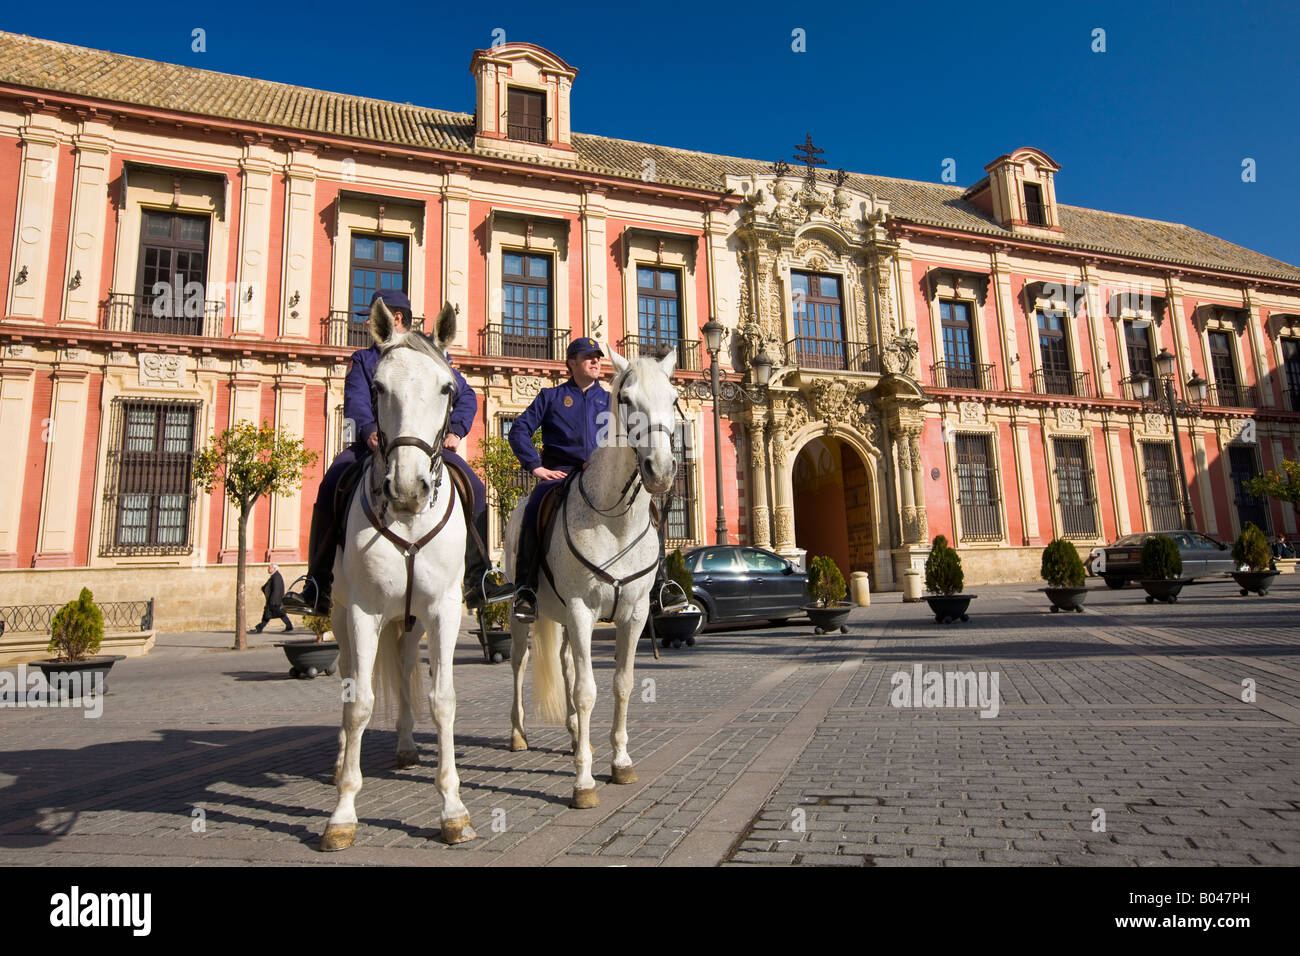 Polizisten auf dem Pferderücken außerhalb der Palacio Arzobispal (Palast des Erzbischofs) im Plaza Virgen de Los Reyes Stockfoto